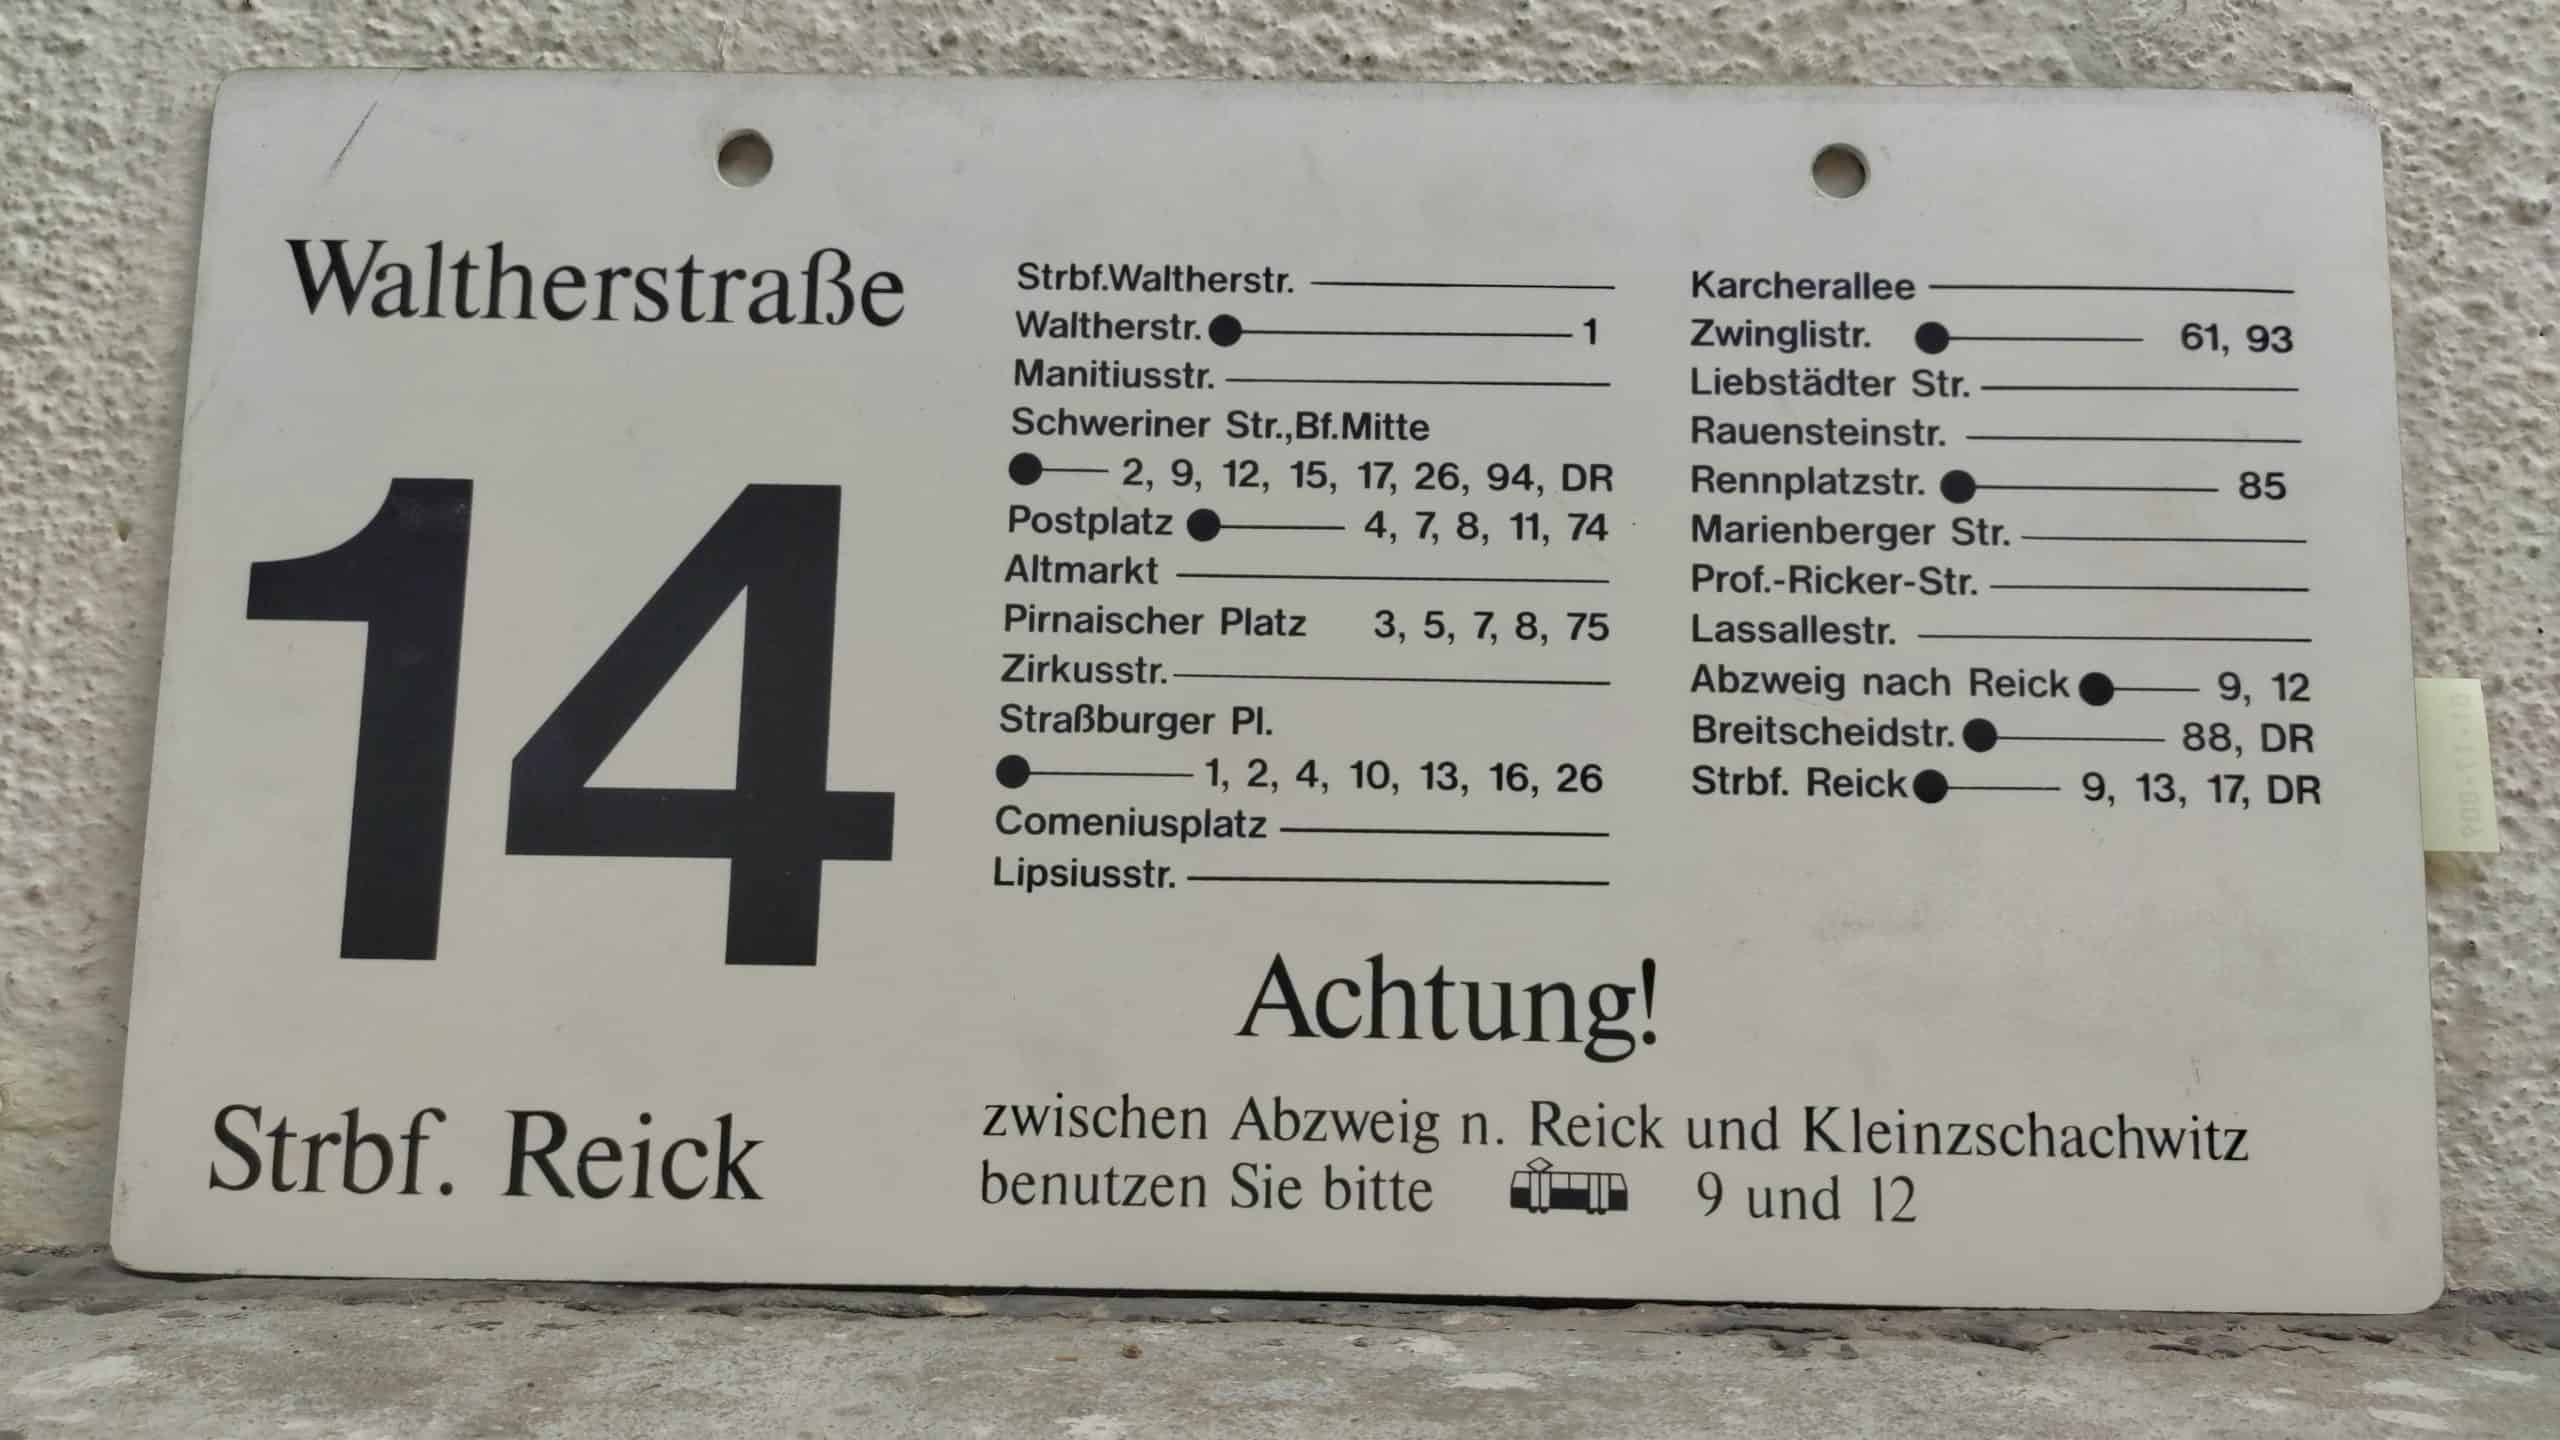 14 Waltherstraße – Strbf. Reick #2